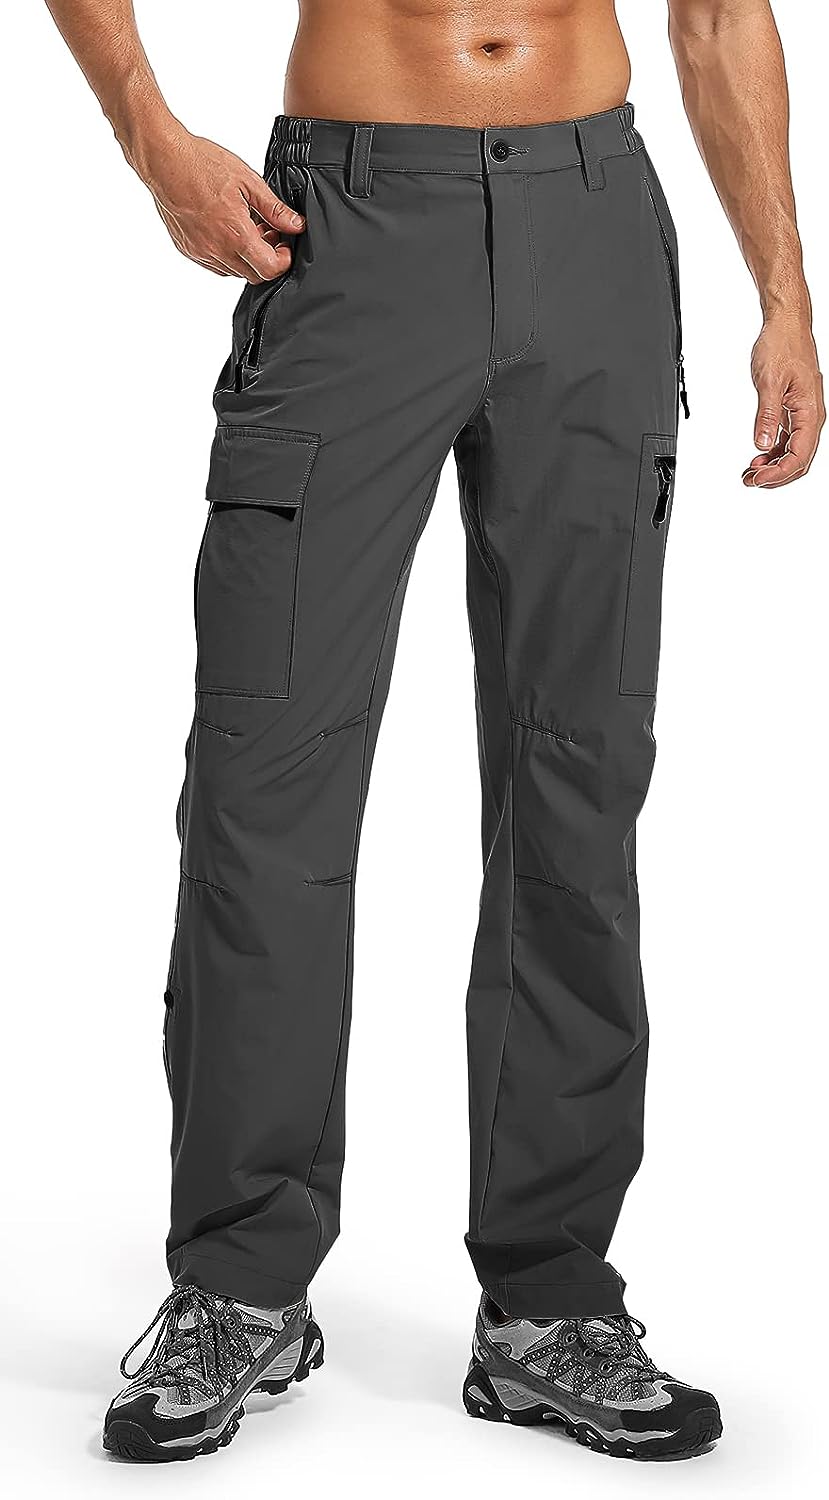 Men's Hiking Cargo Pants - Lightweight, Quick Dry, Waterproof for